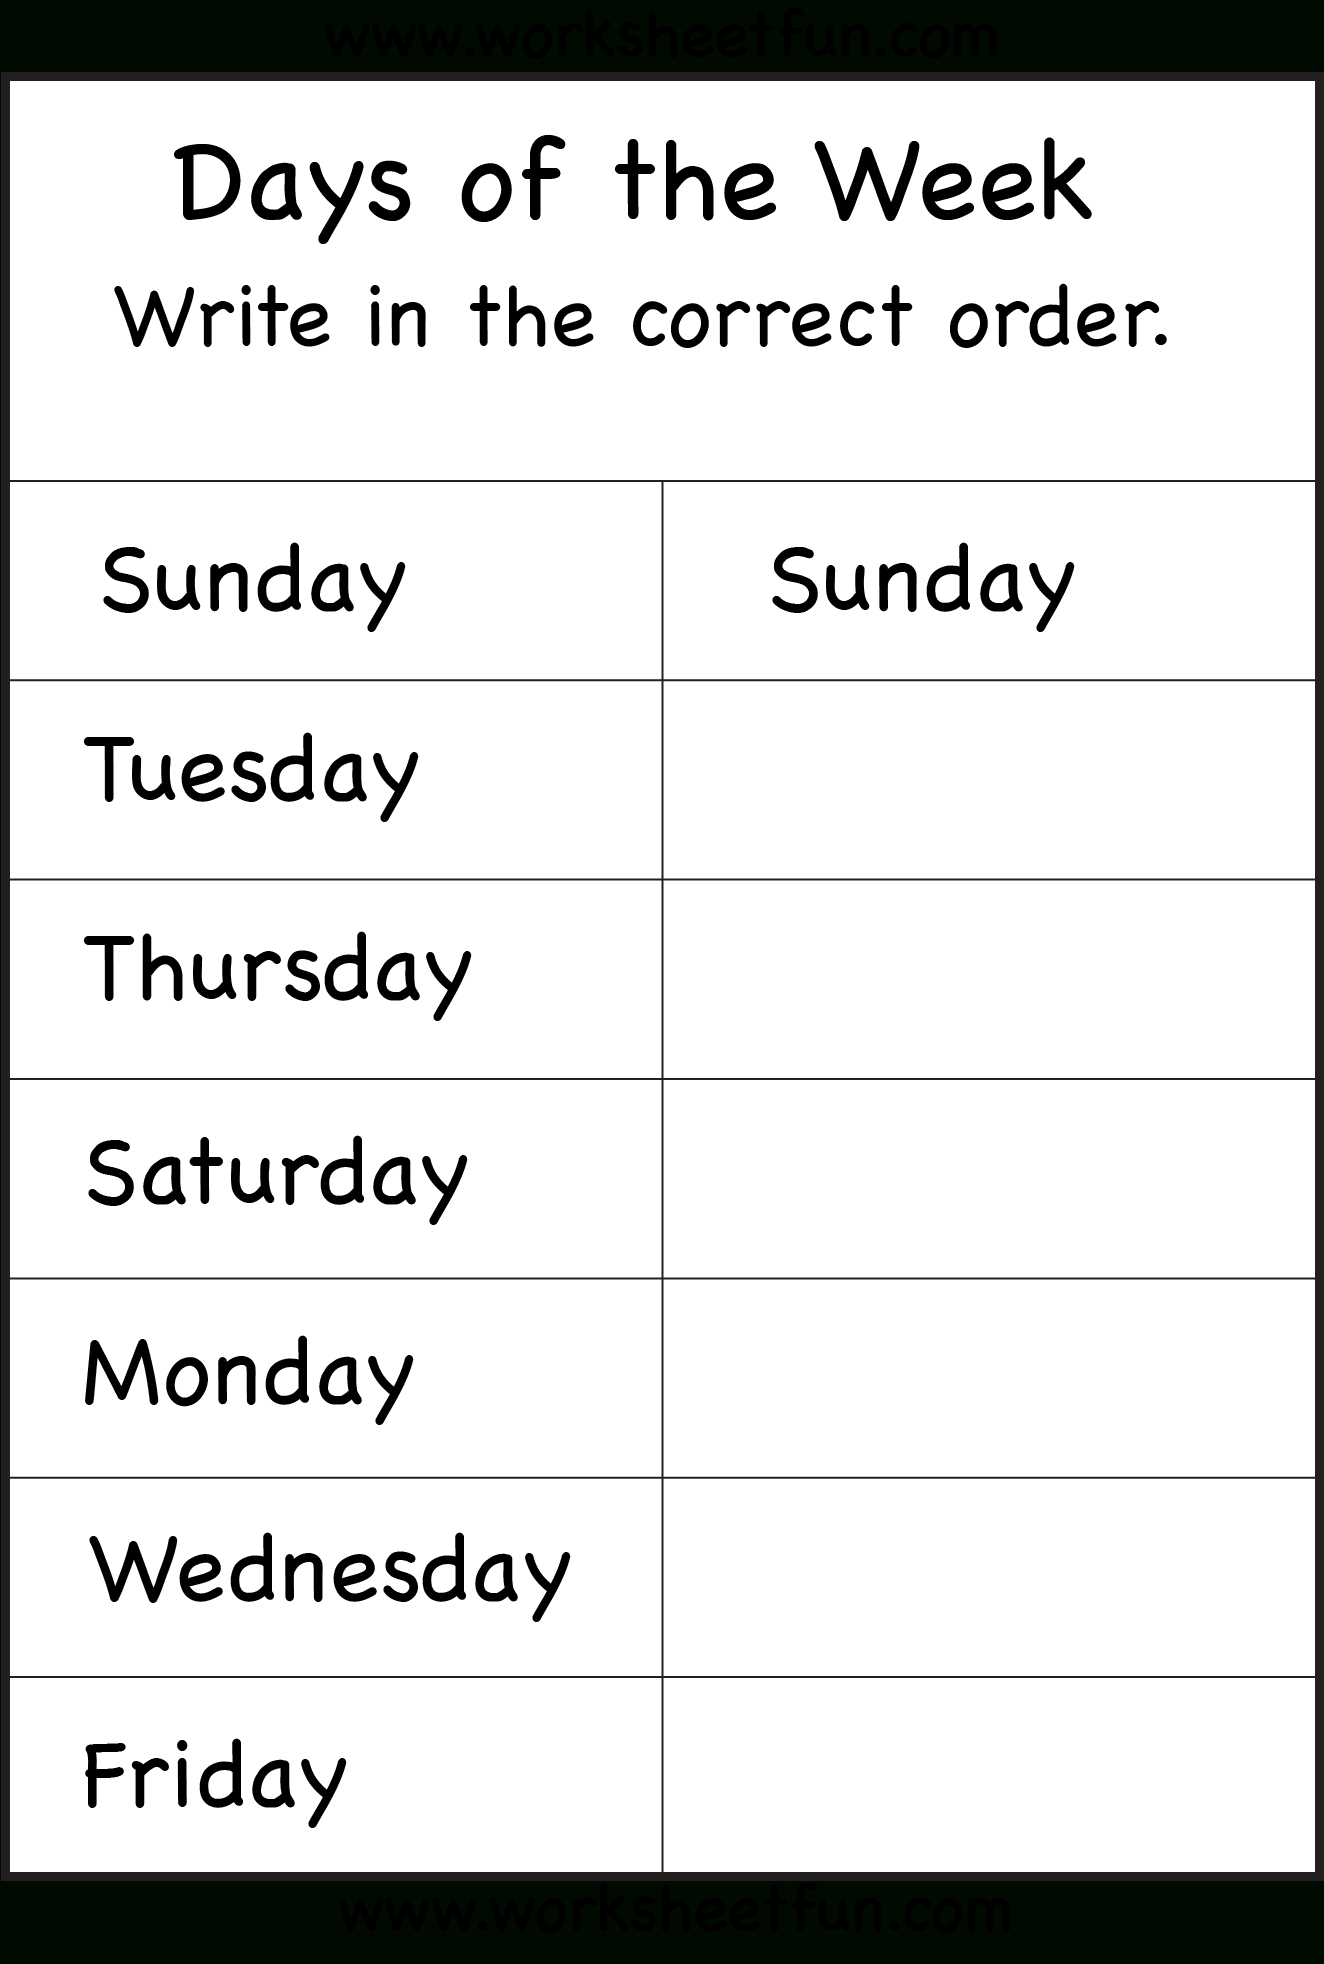 Days Of The Week - 1 Worksheet / Free Printable Worksheets  Days Of The Week Grid For Workers Hours